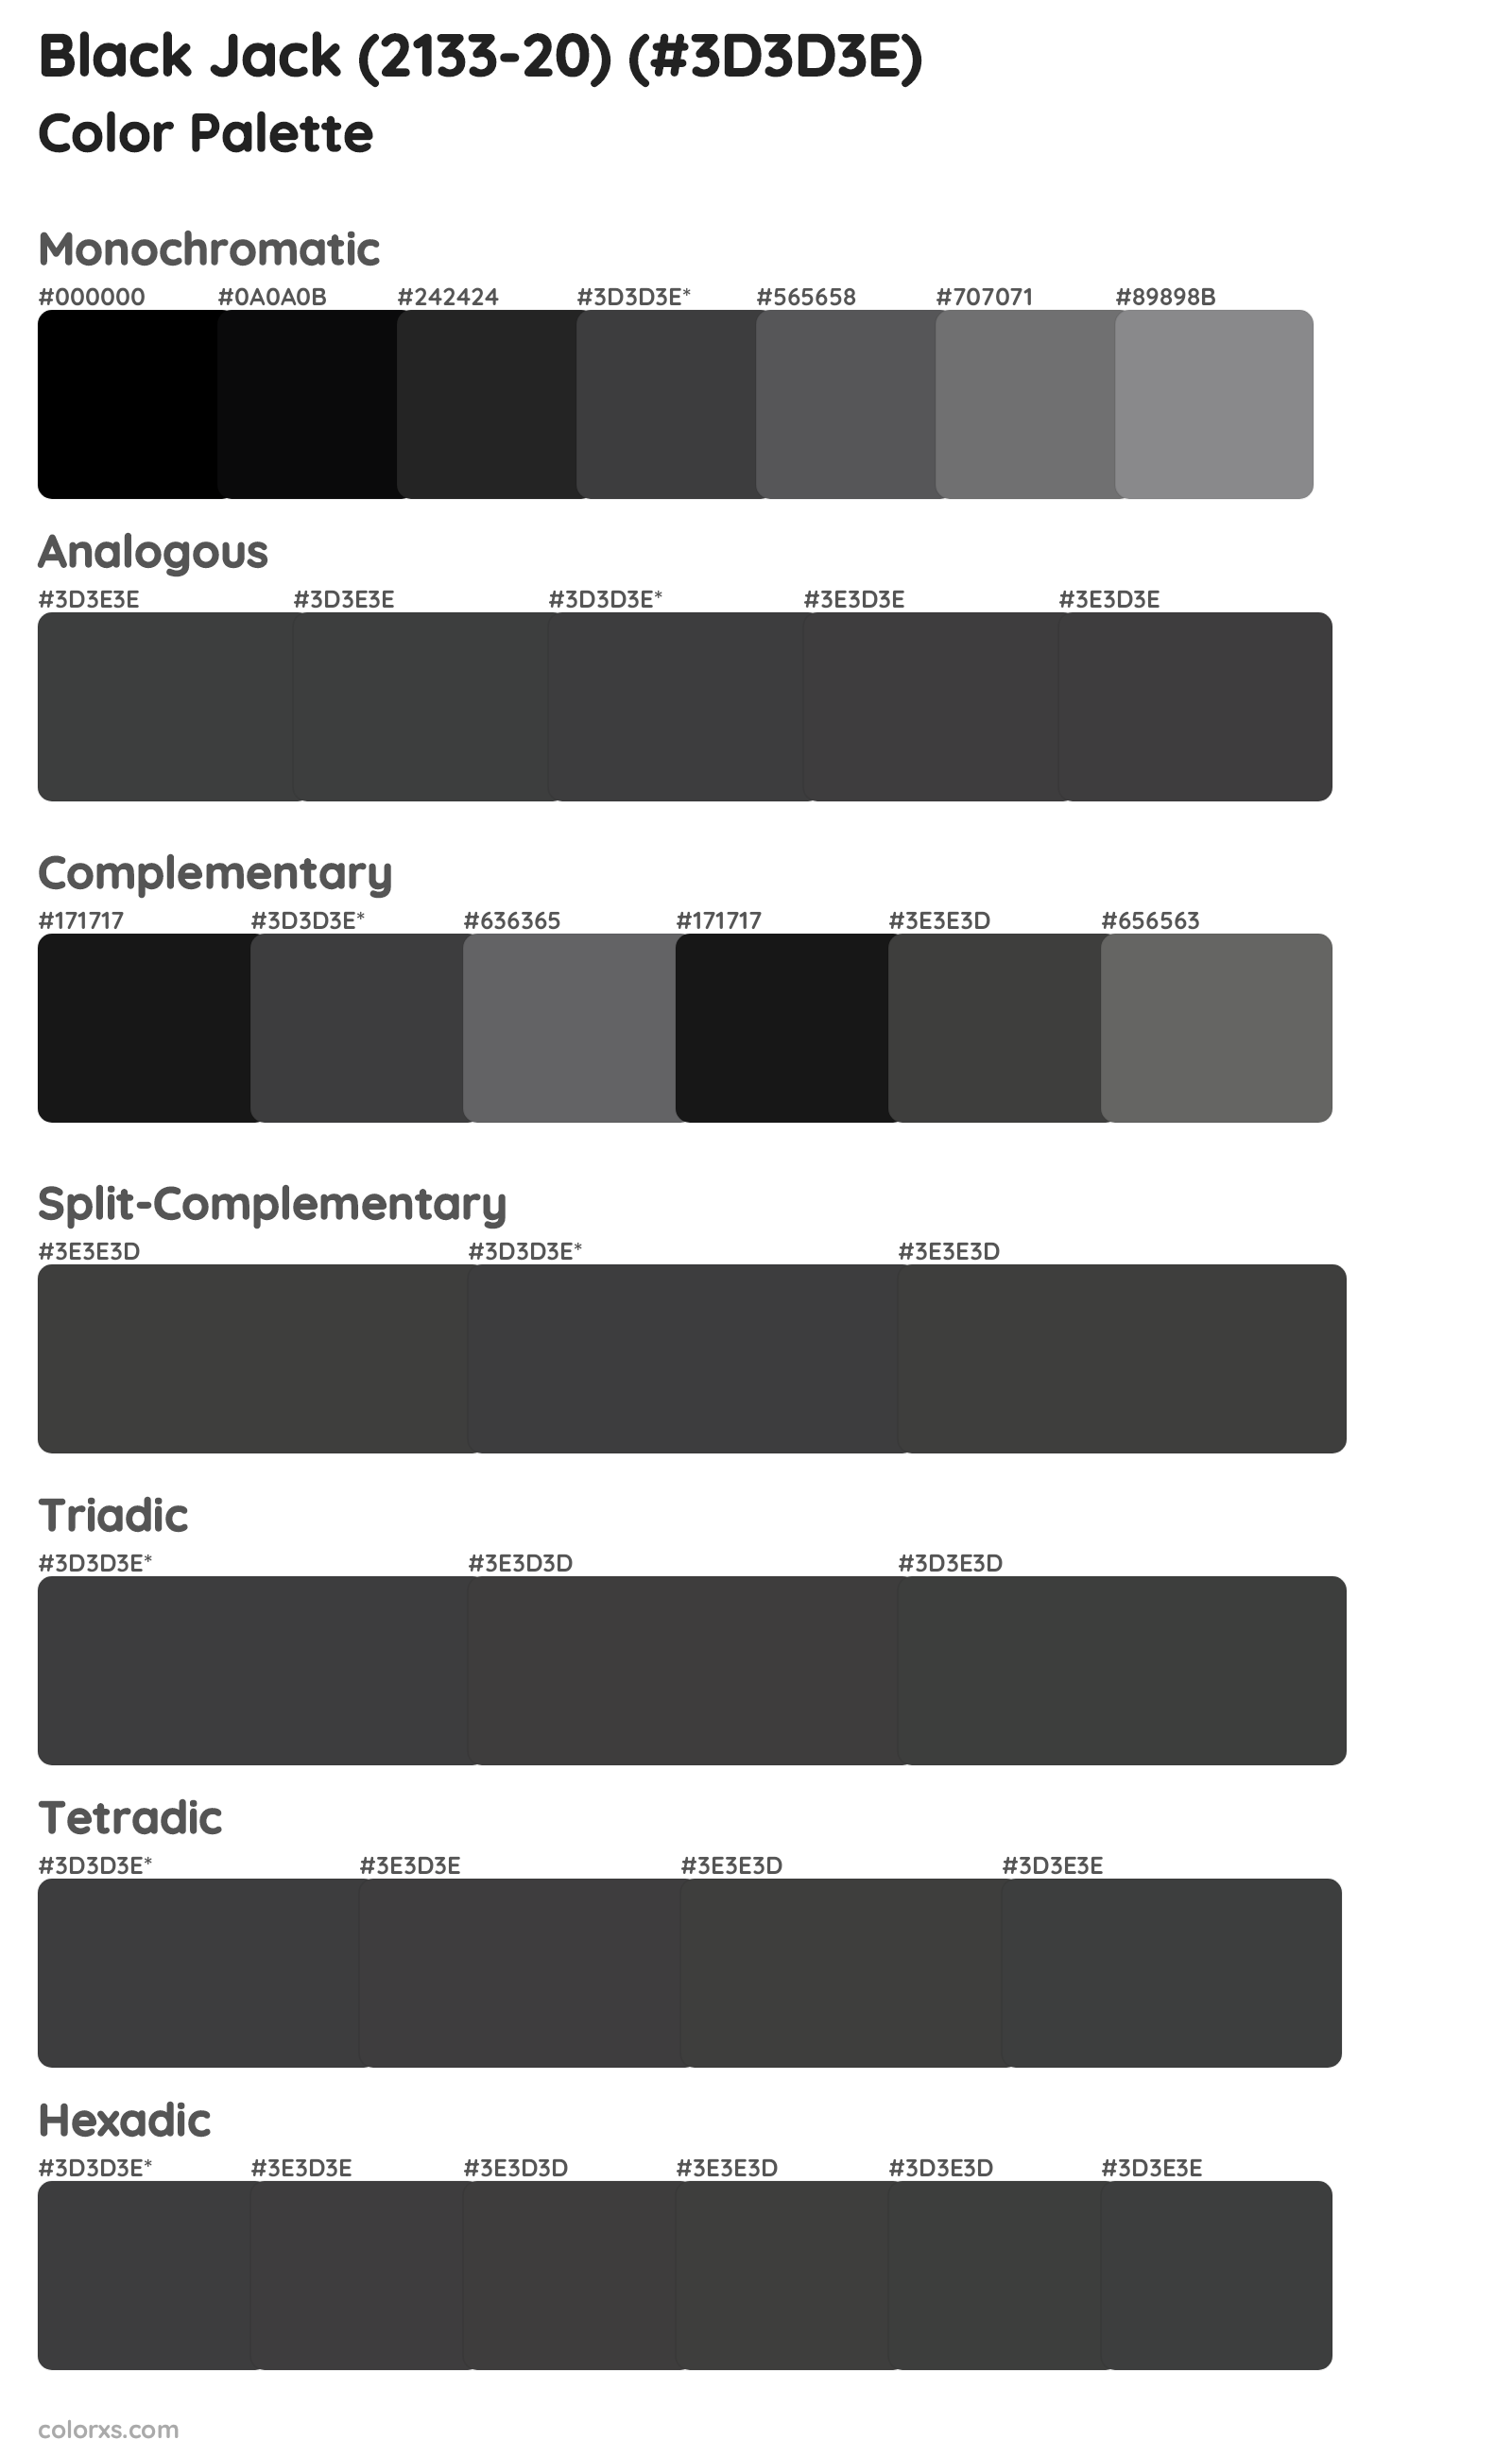 Black Jack (2133-20) Color Scheme Palettes